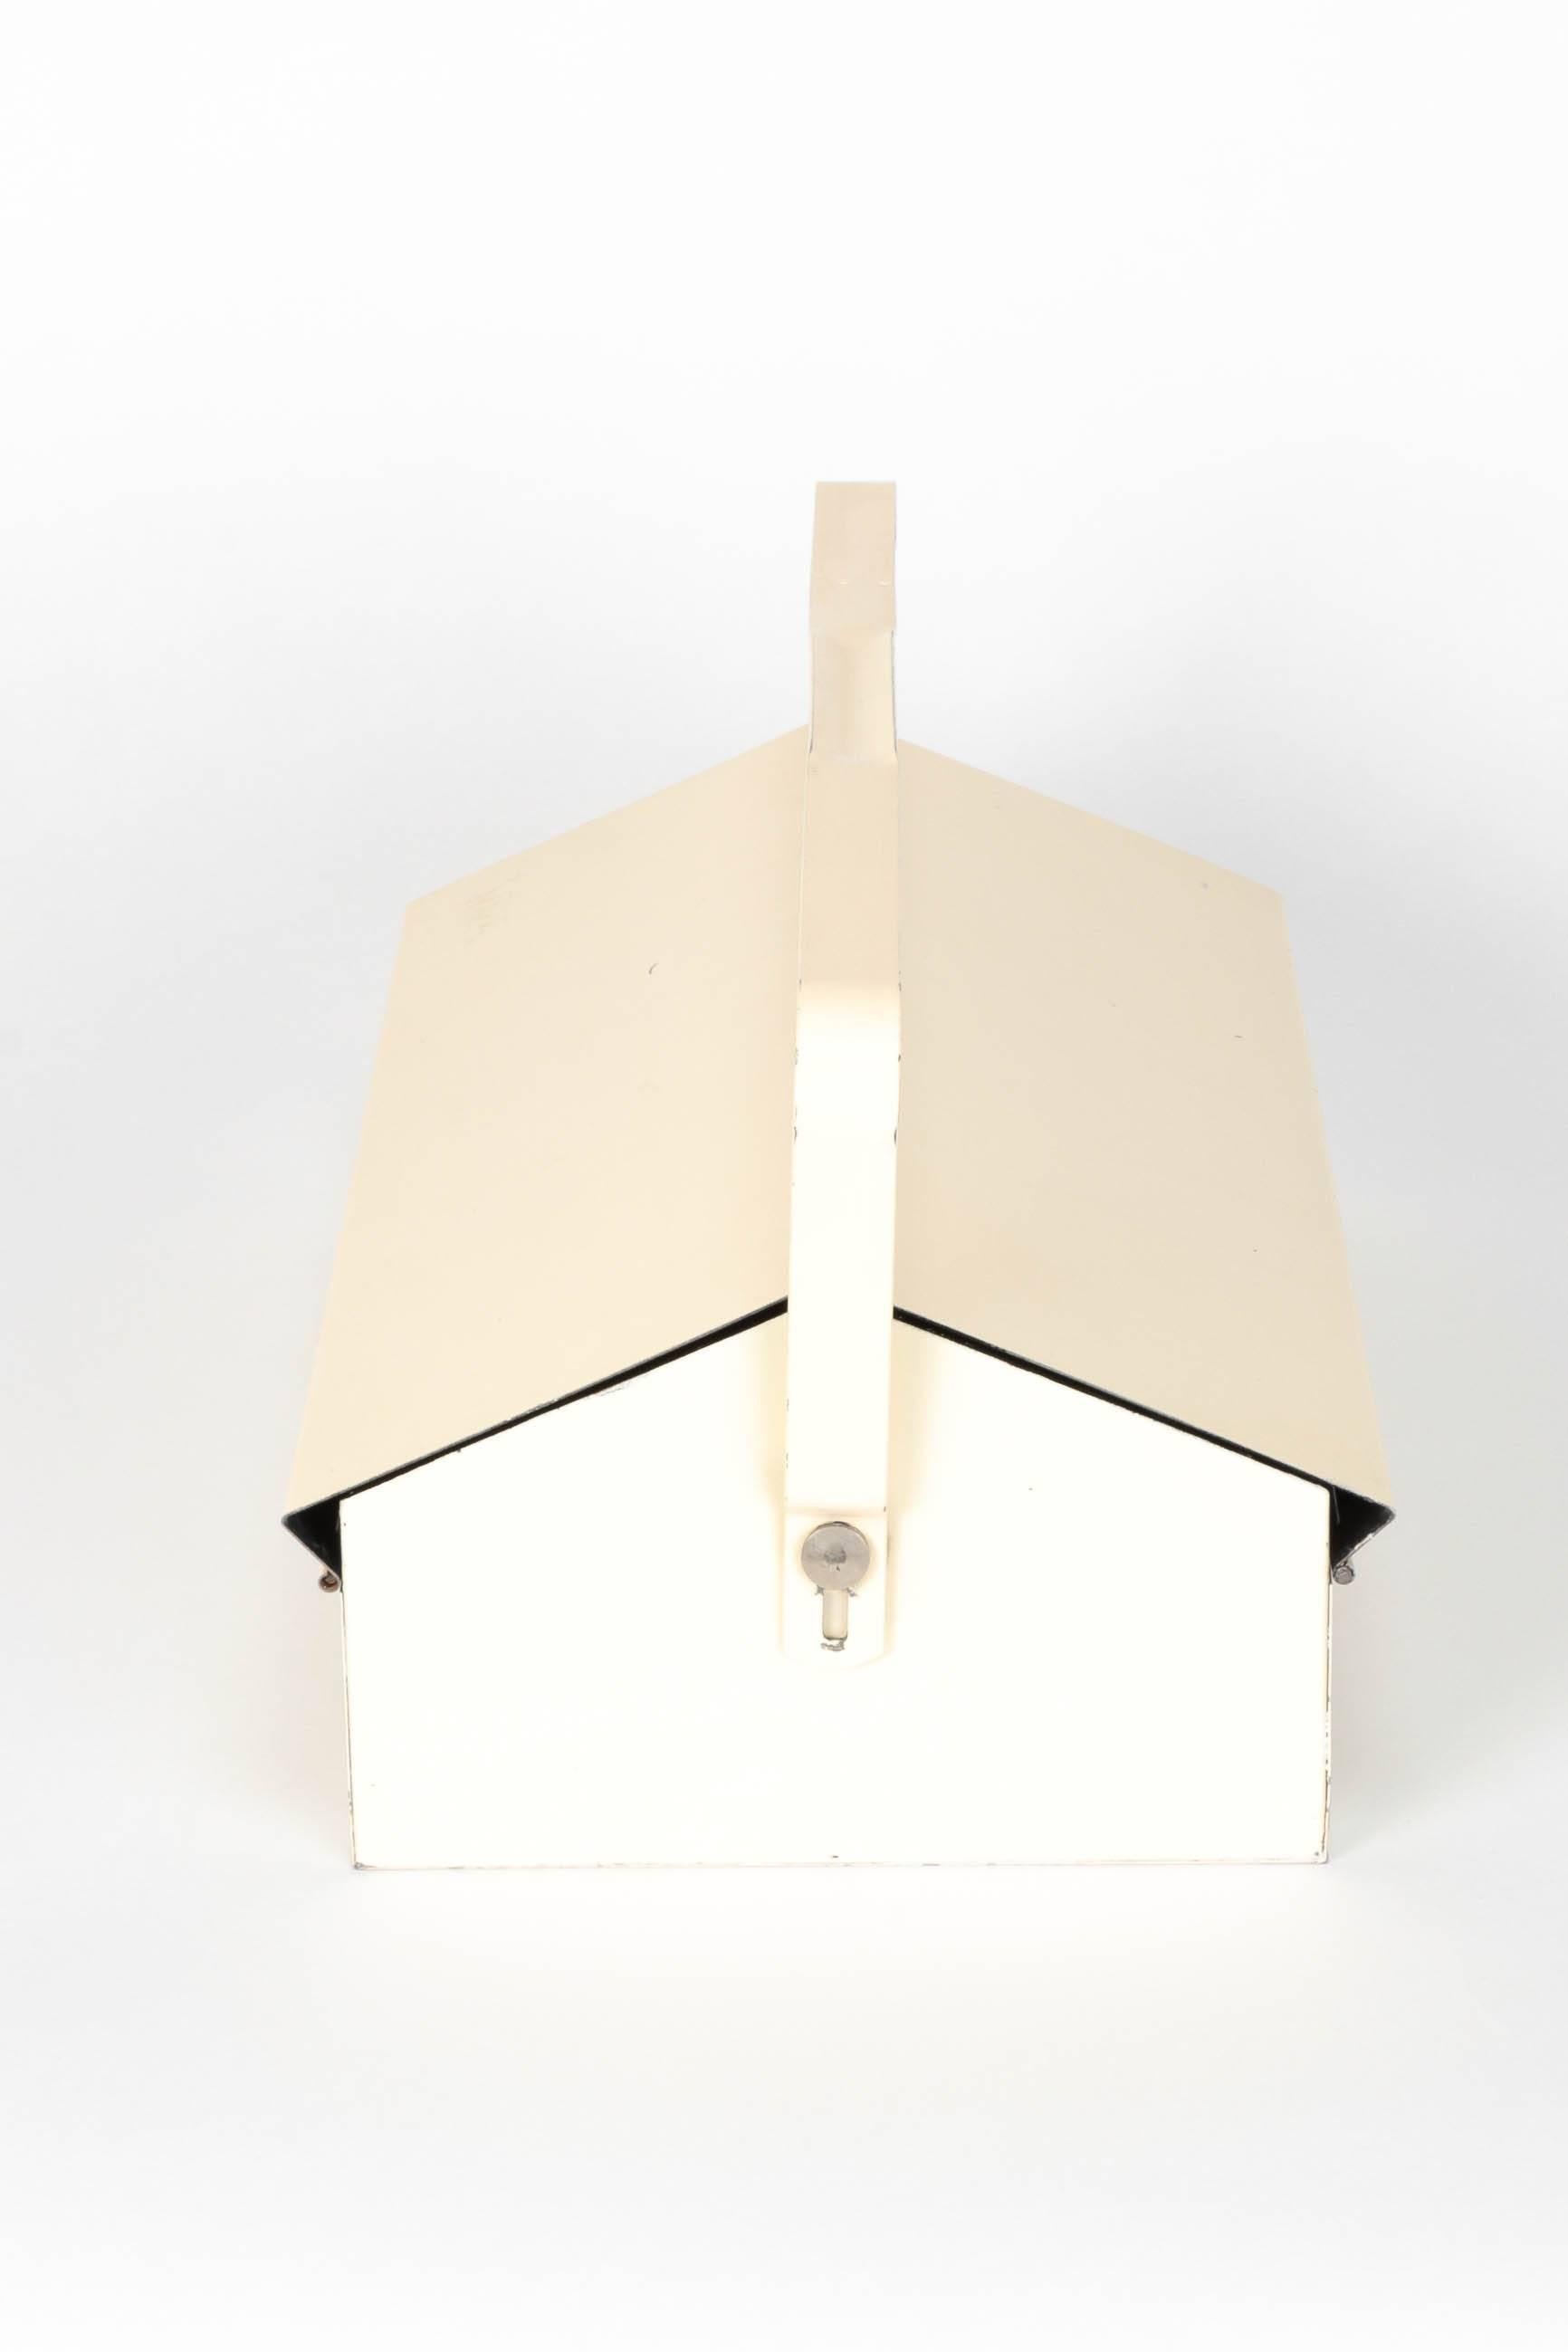 Enameled Swiss Design Shoe Shine Box by Wilhelm Kienzle for MEWA 1940